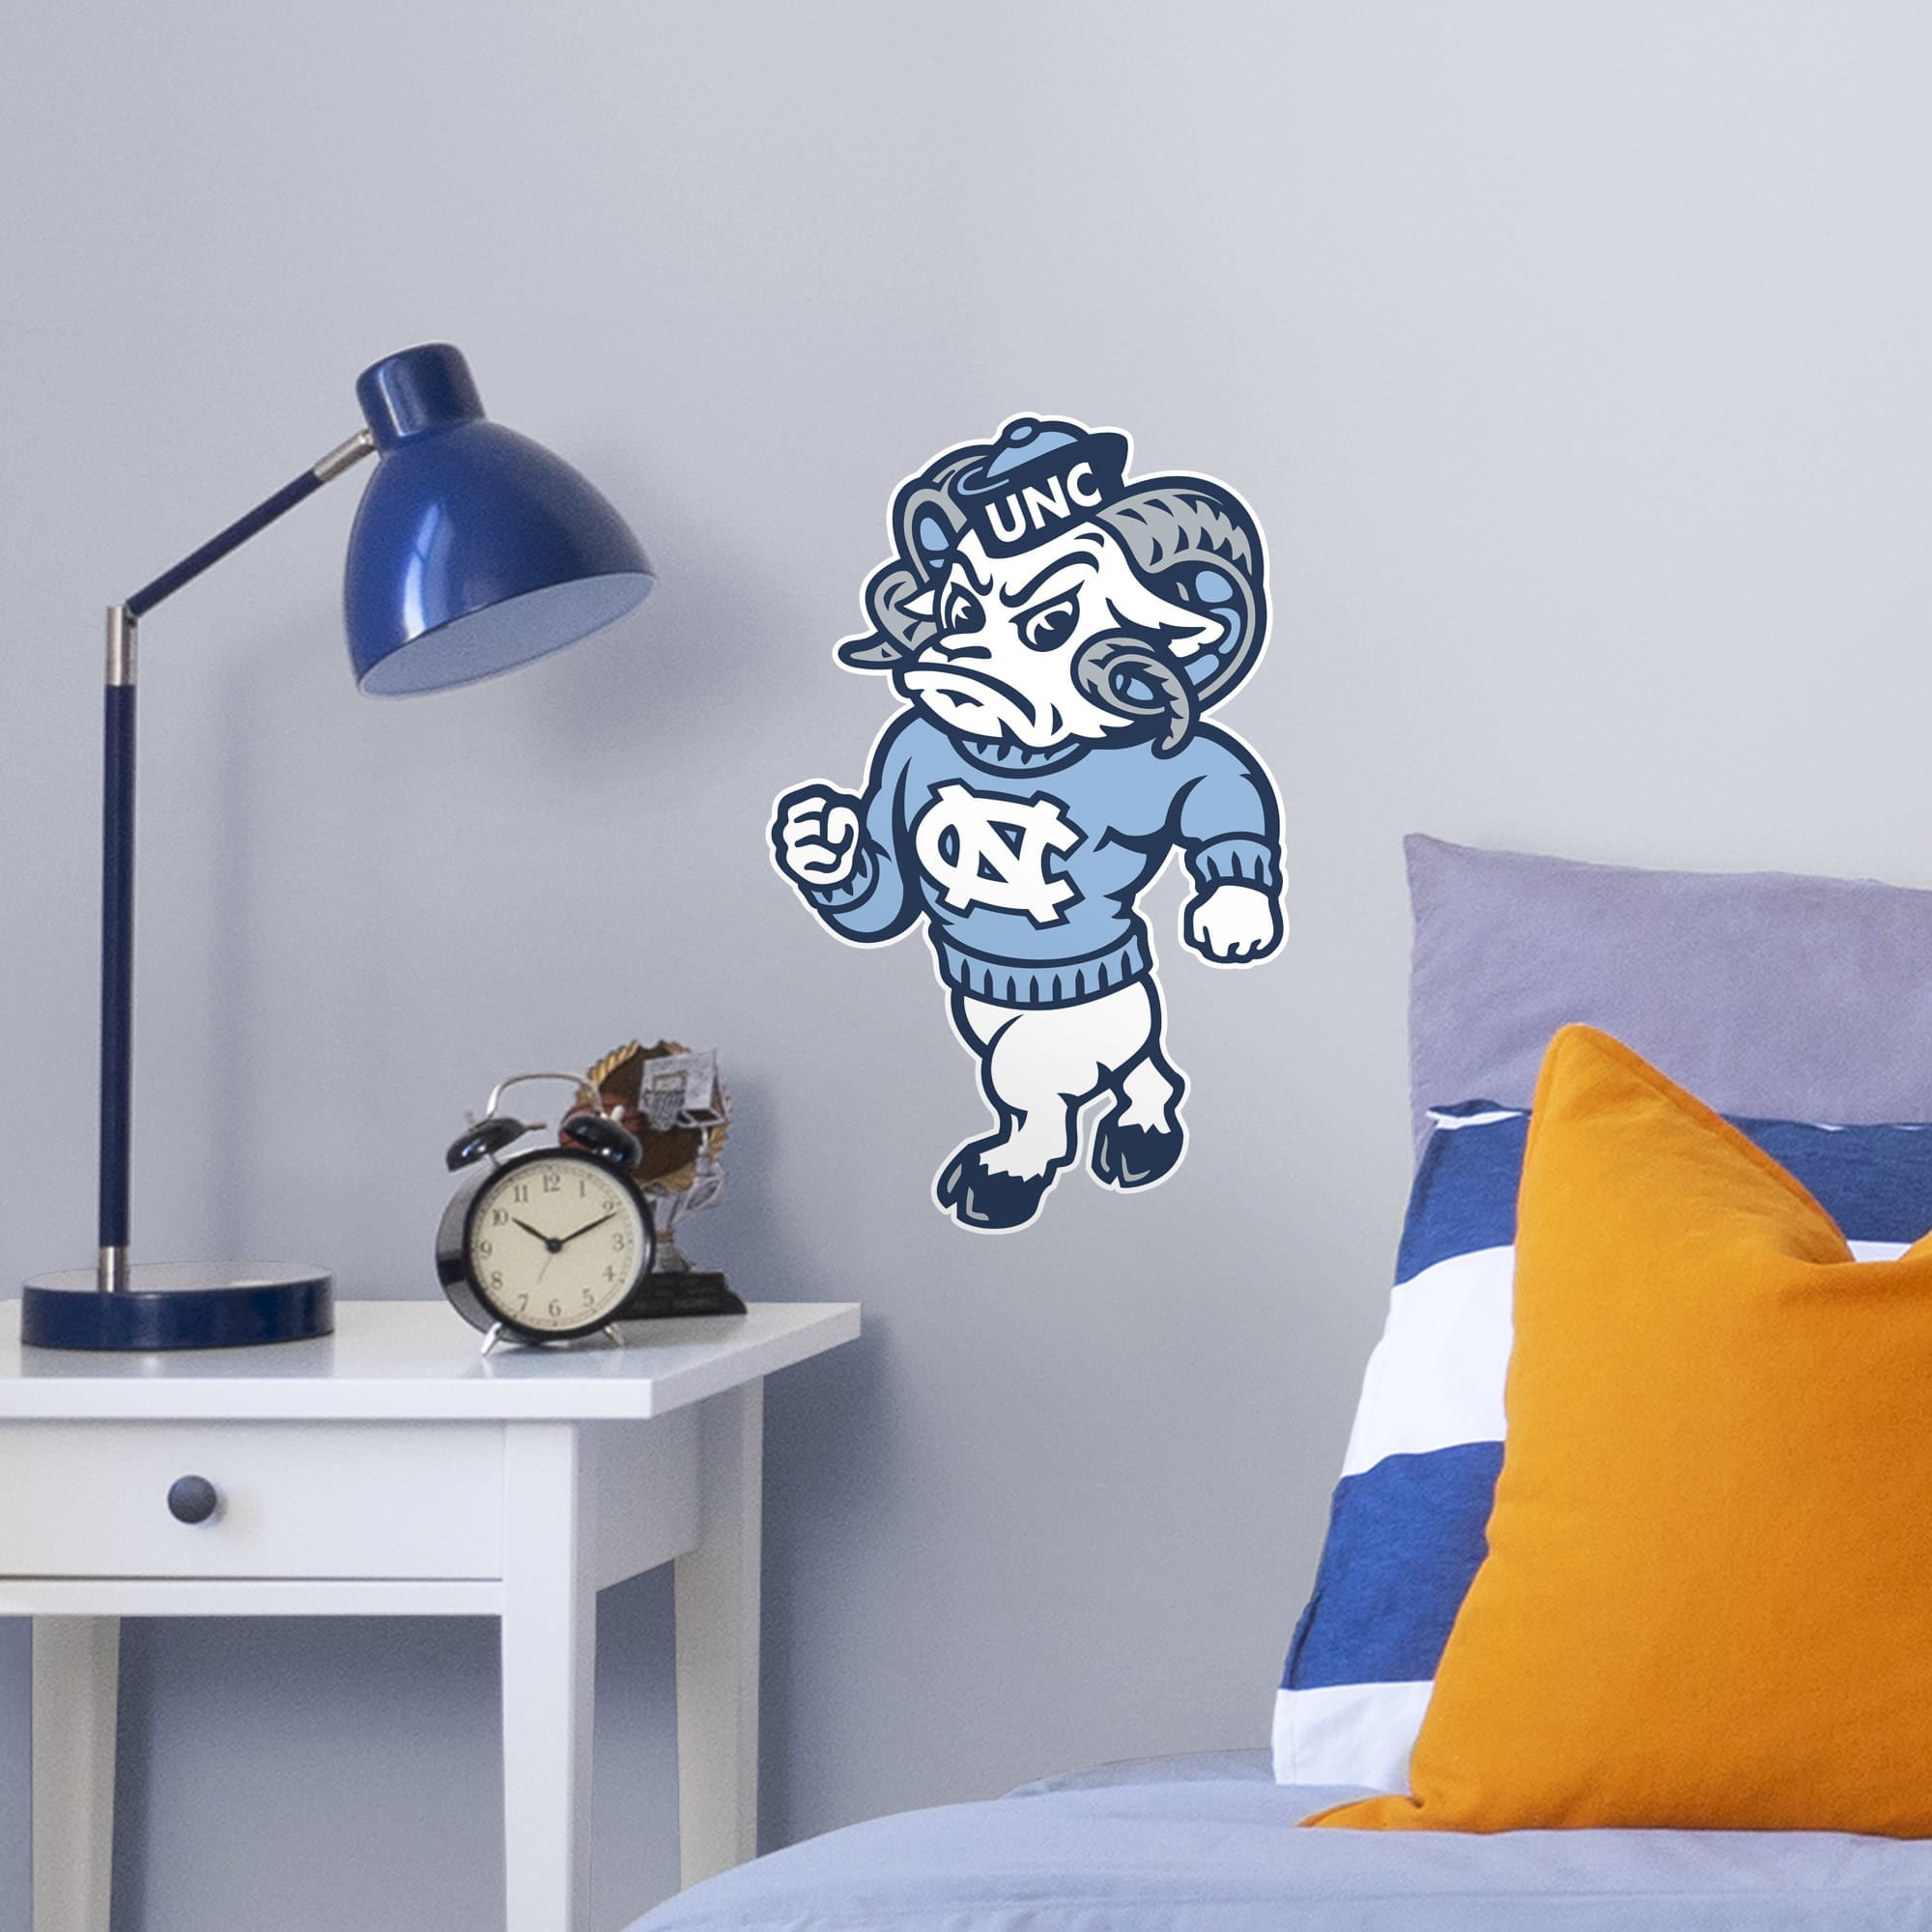 Shrunken Head Brand UNC Tar Heels Mascot Throw Pillow Rameses Fan Shop Home Kitchen Bedding Bed Pillows